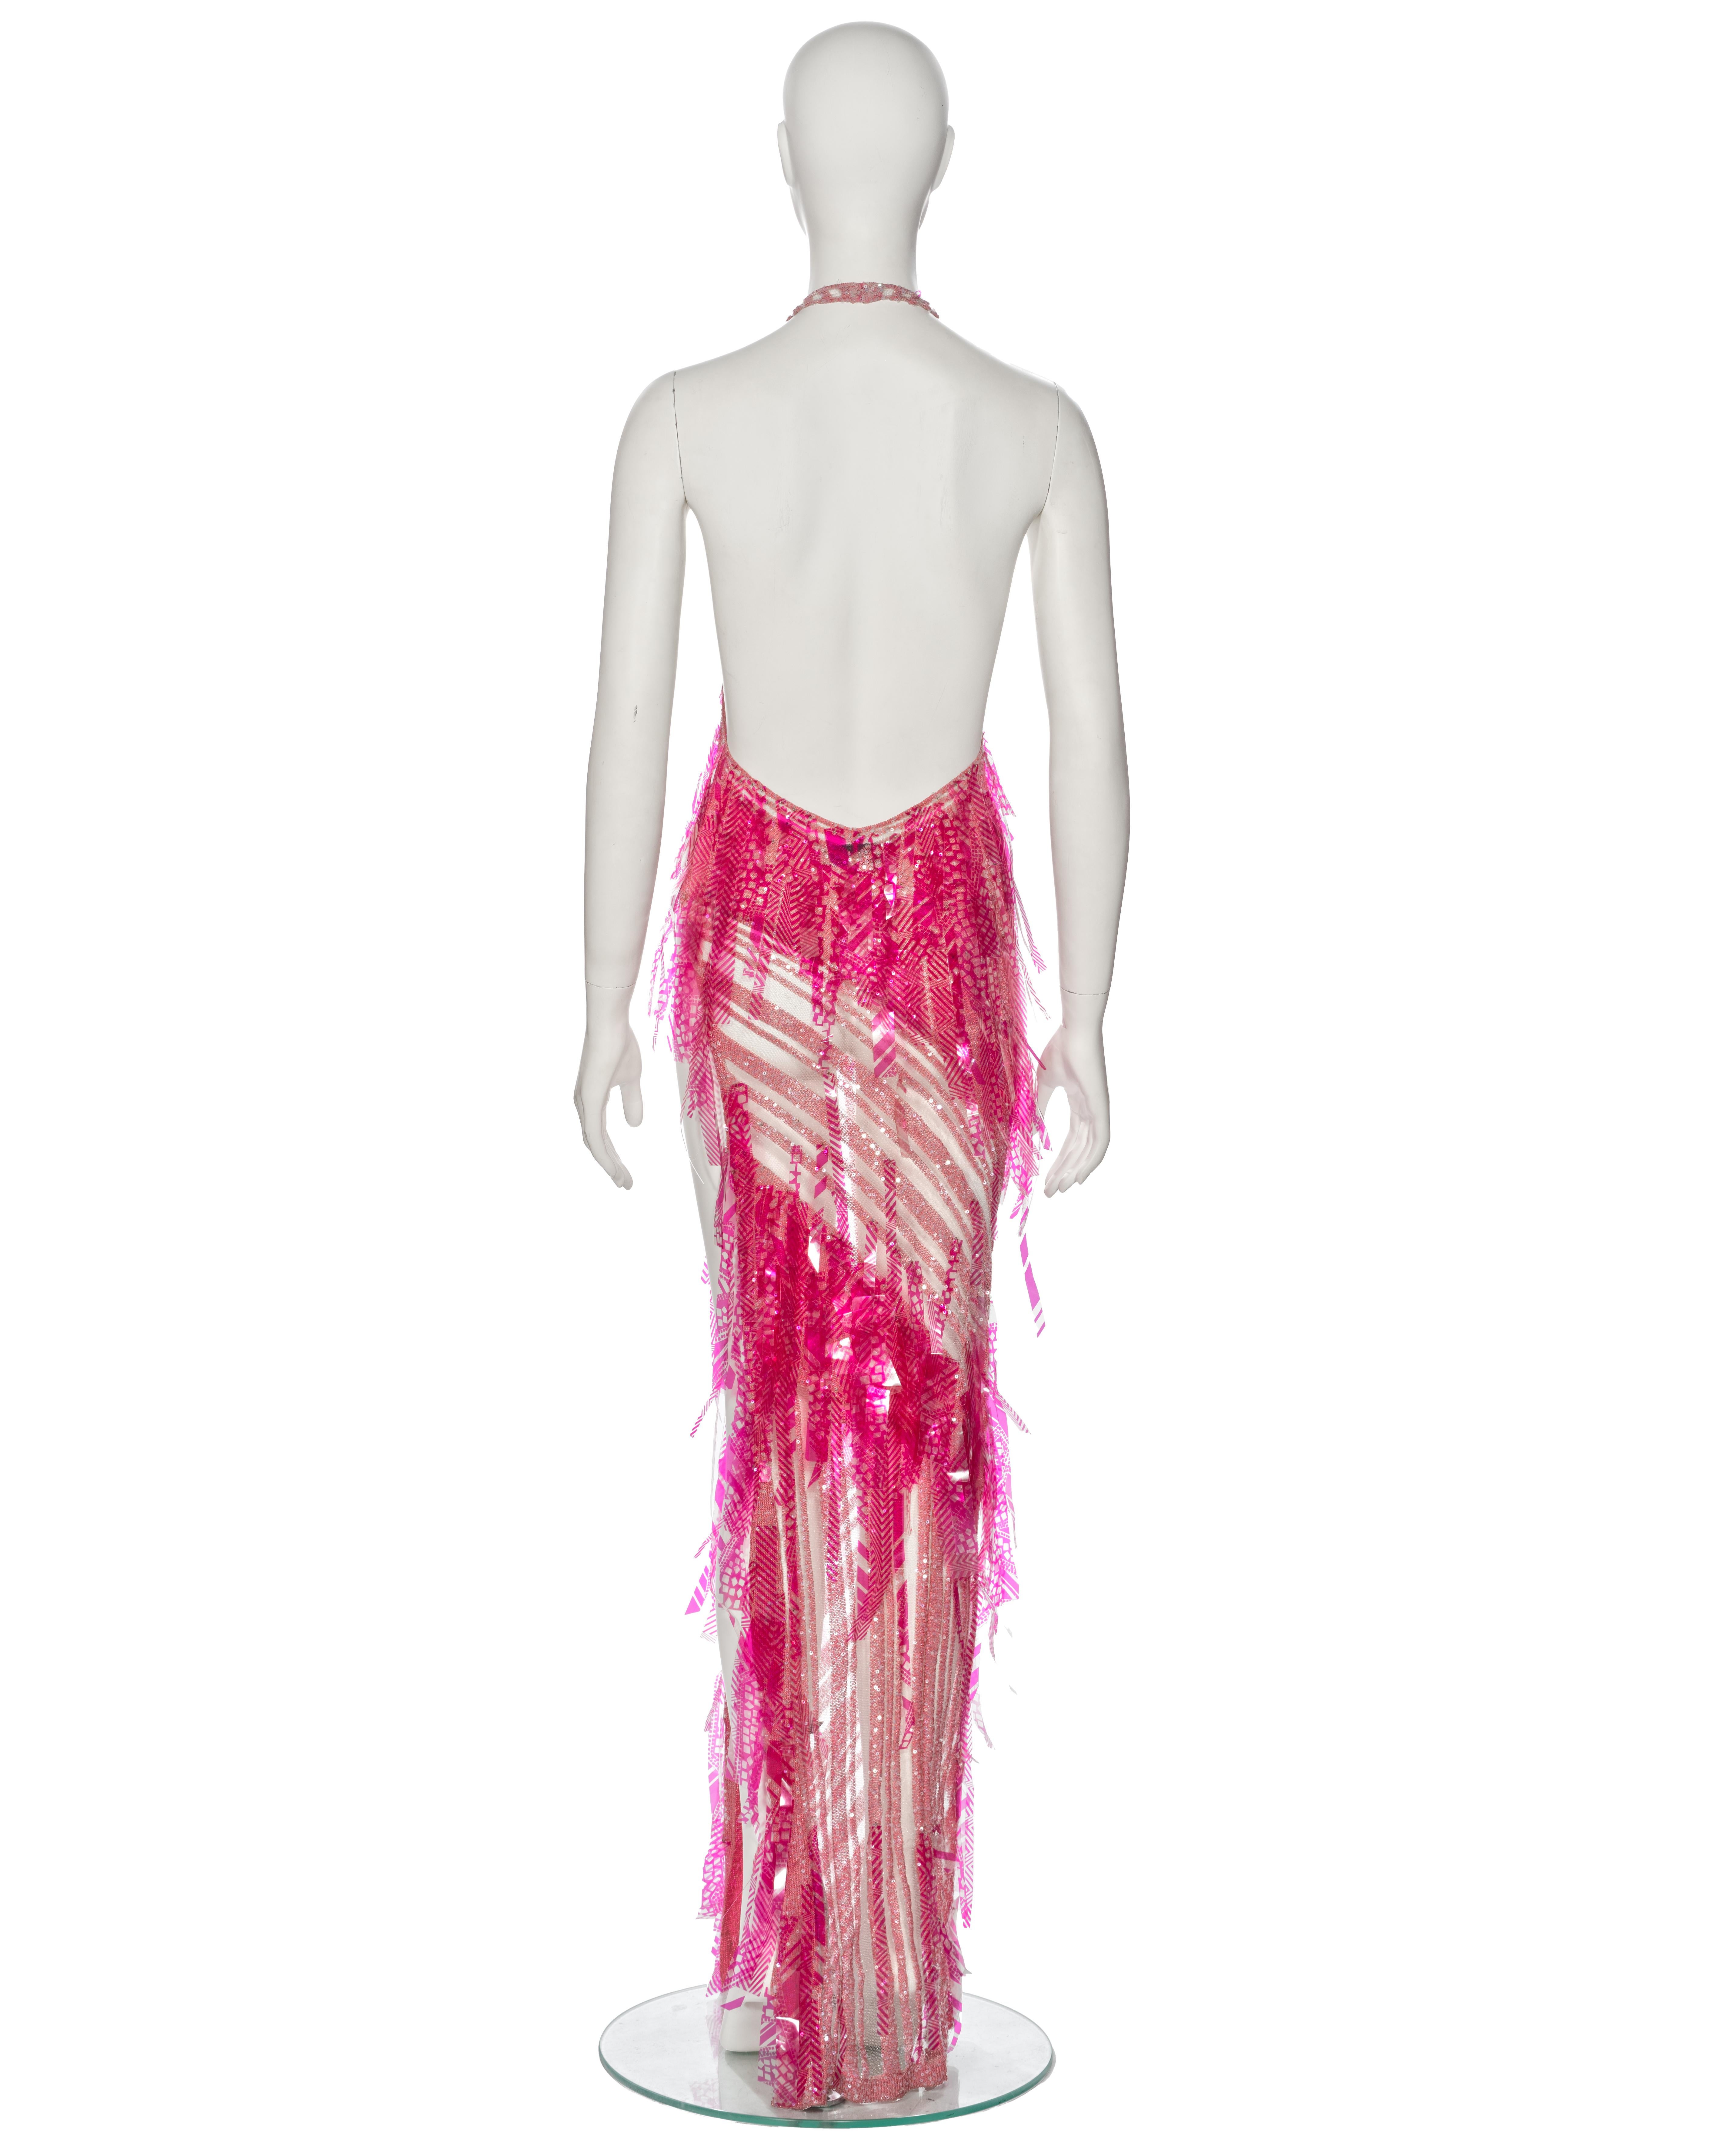 Julien MacDonald Pink Striped Knit Embellished Evening Dress, ss 2002 For Sale 4